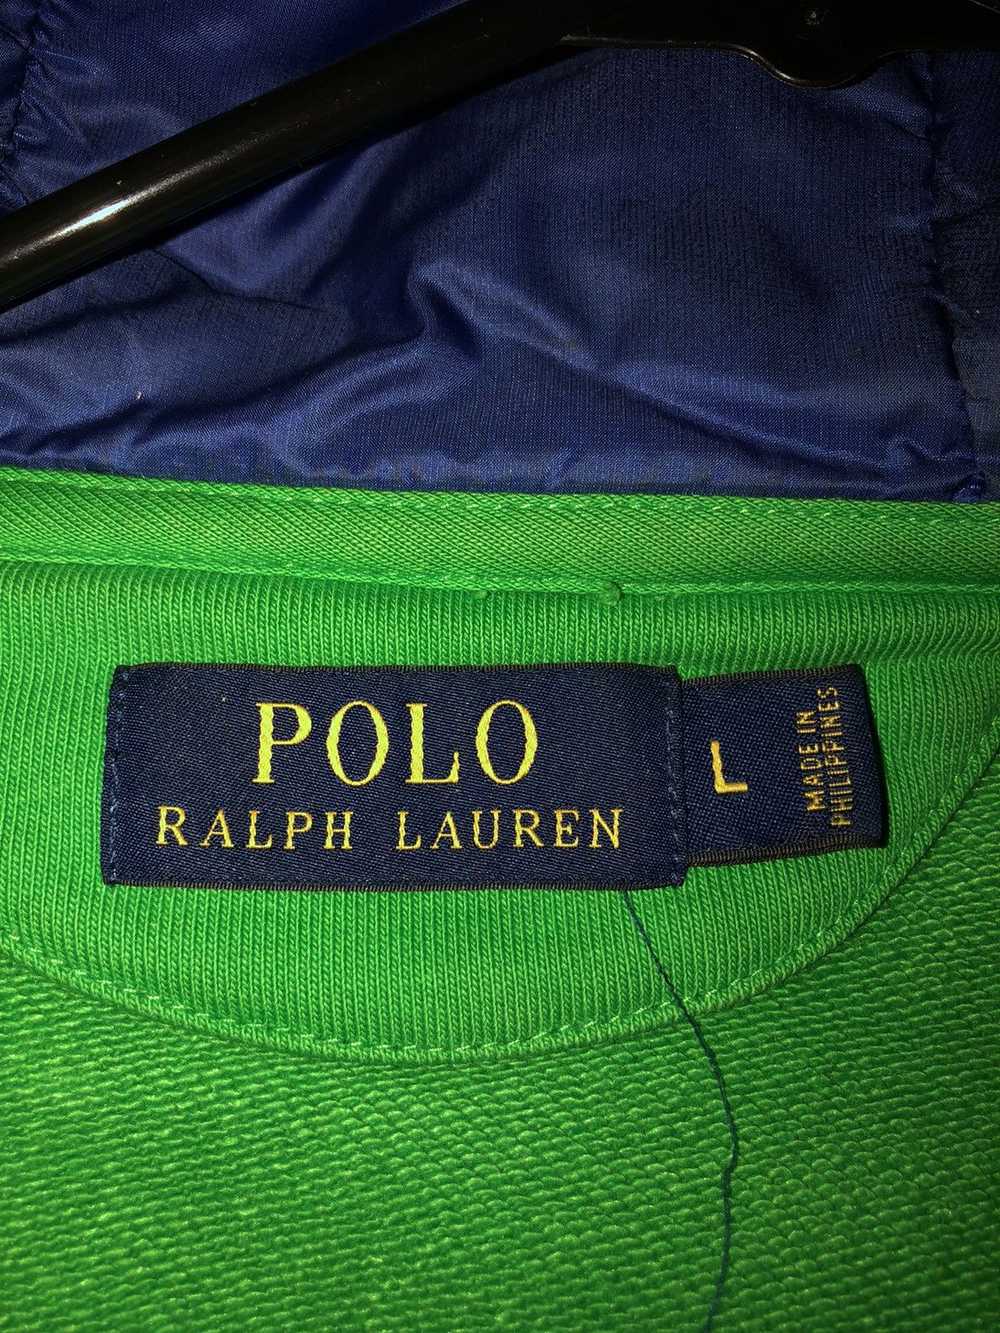 Polo Ralph Lauren Ralph Lauren Jacket - image 3